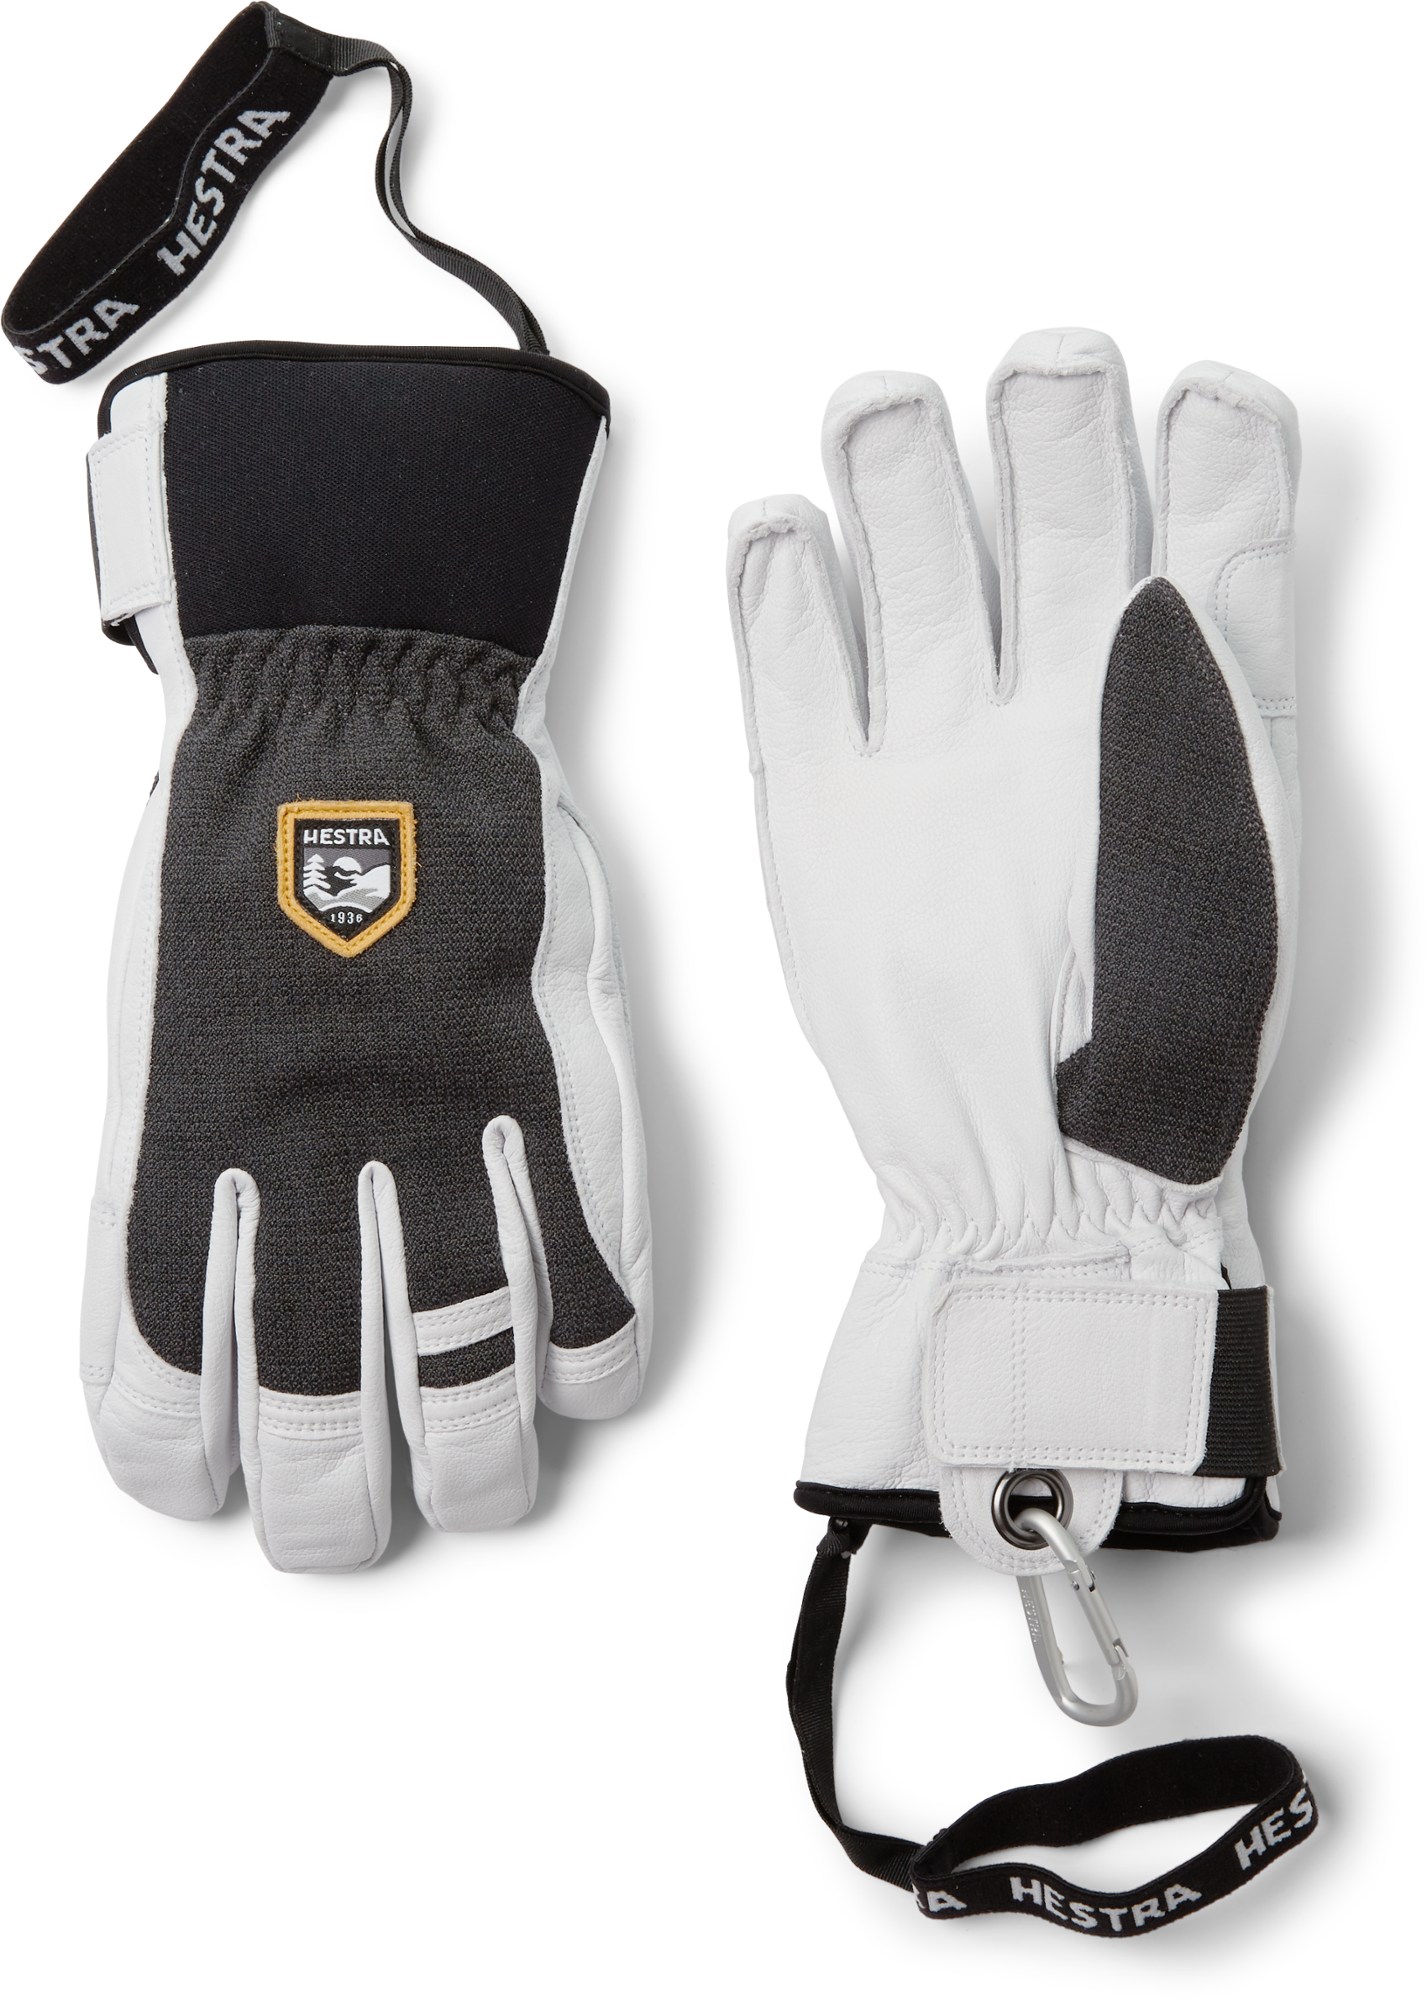 Армейские кожаные патрульные изолированные перчатки Hestra Gloves, серый kirkland signature golf gloves premium cabretta leather x large 4 count